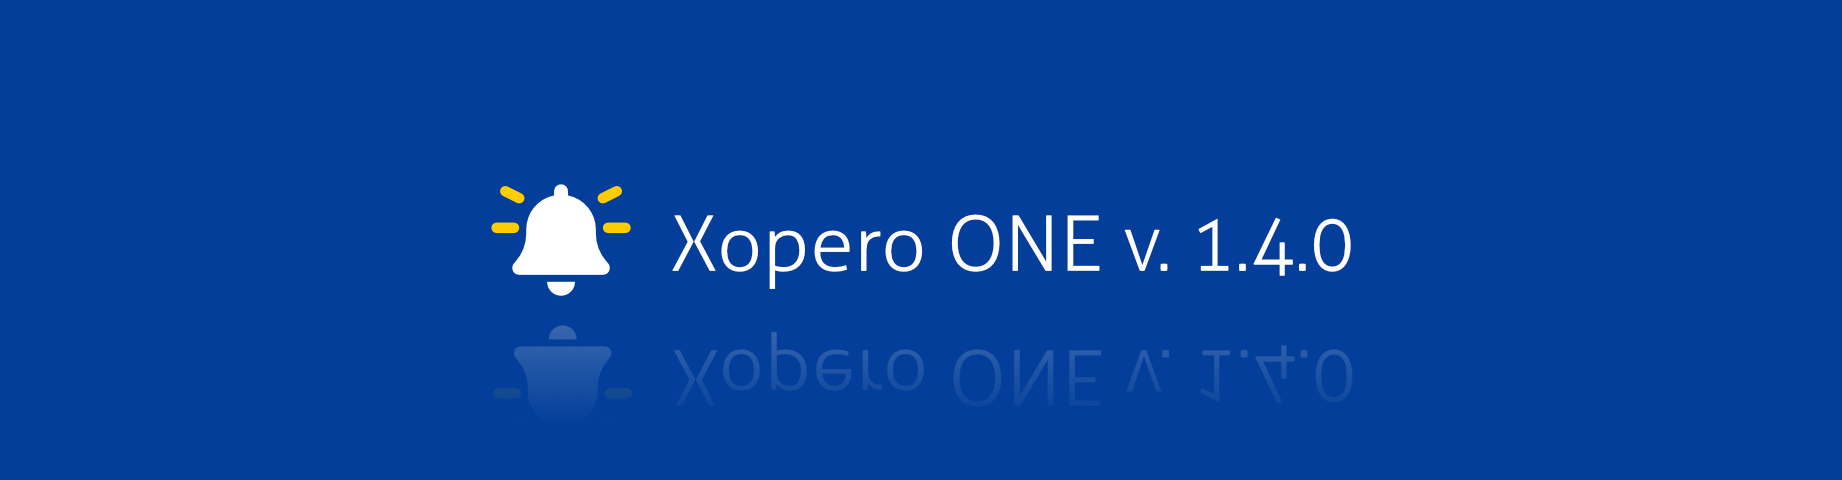 Новая версия Xopero ONE 1.4.0 уже доступна пользователям - надежное решение для резервного копирования и восстановления корпоративных данных.